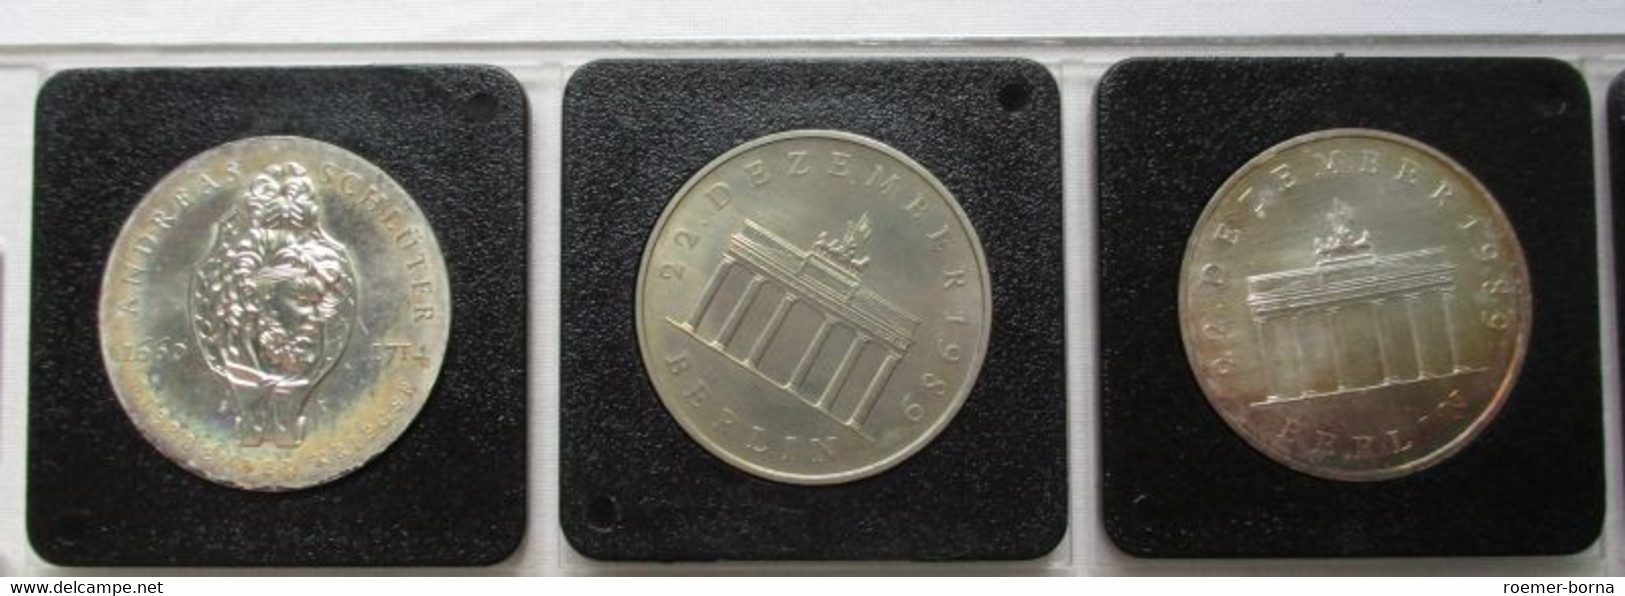 DDR Gedenkmünzensammlung komplett 123 Münzen Stempelglanz (111376)